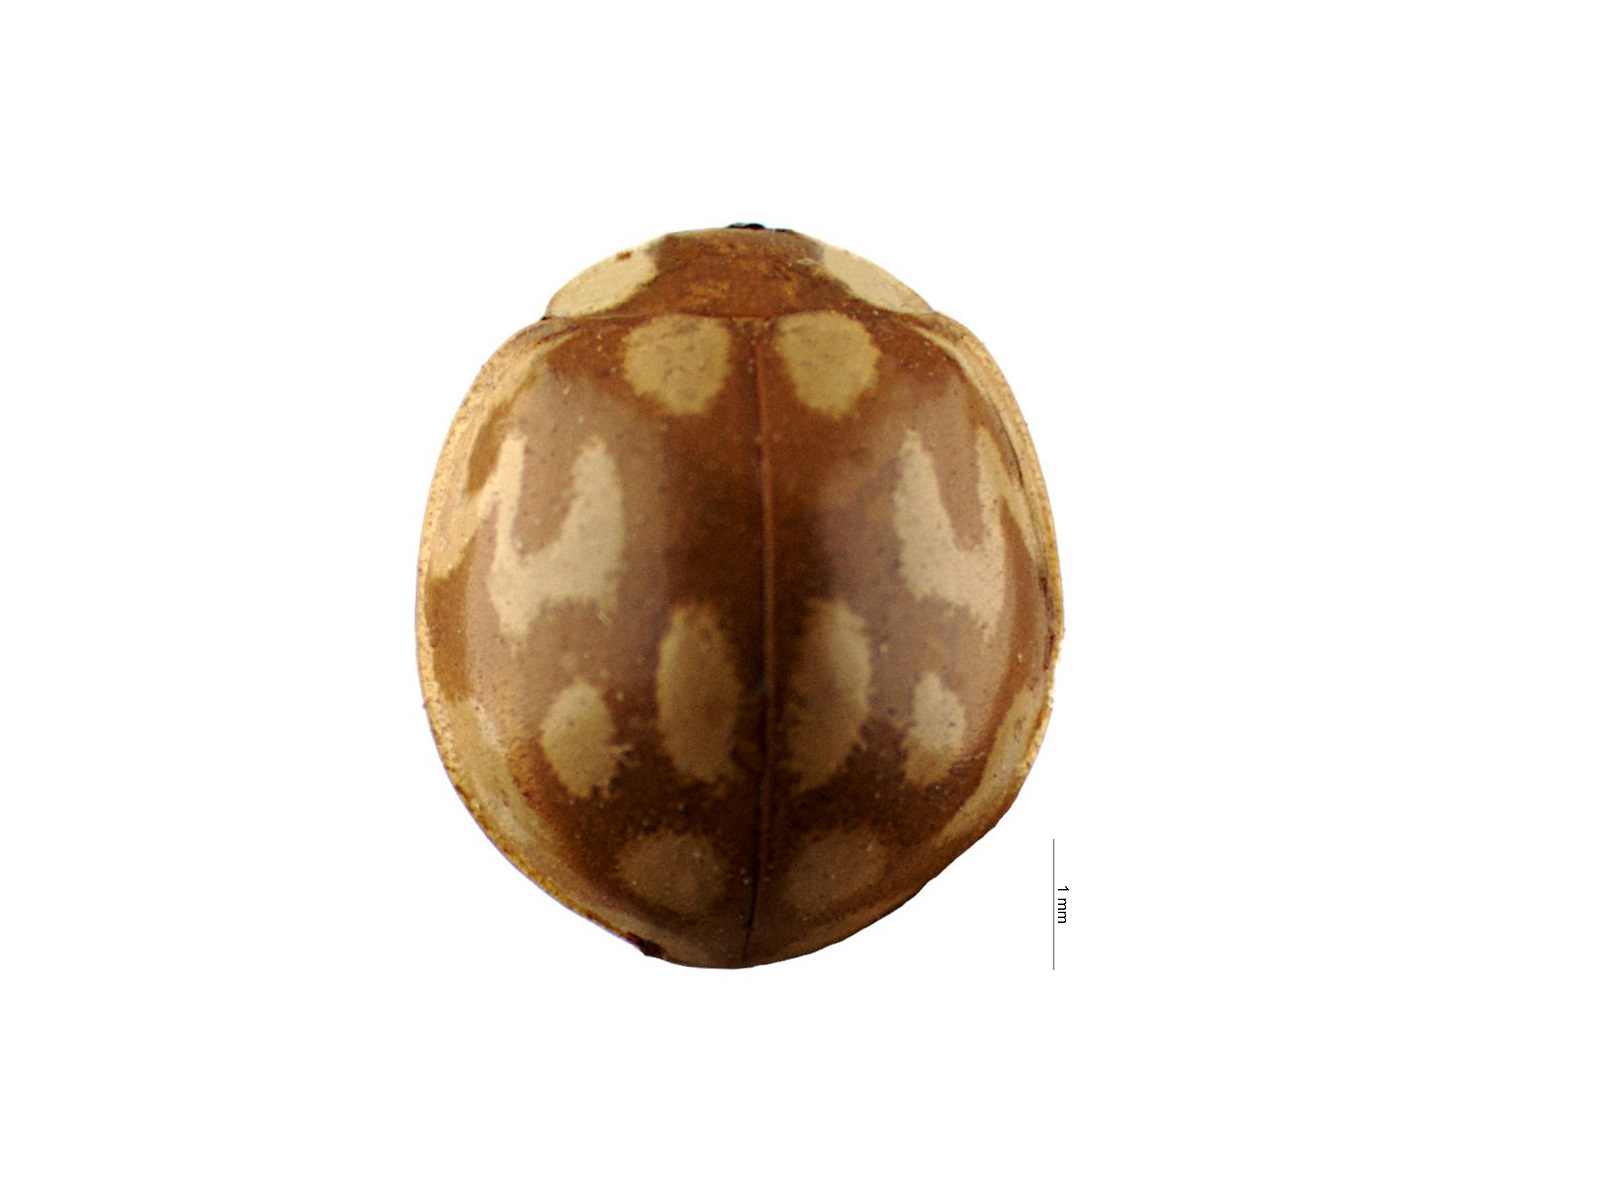 Neocalvia cayennensis (Gmelin, 1790)